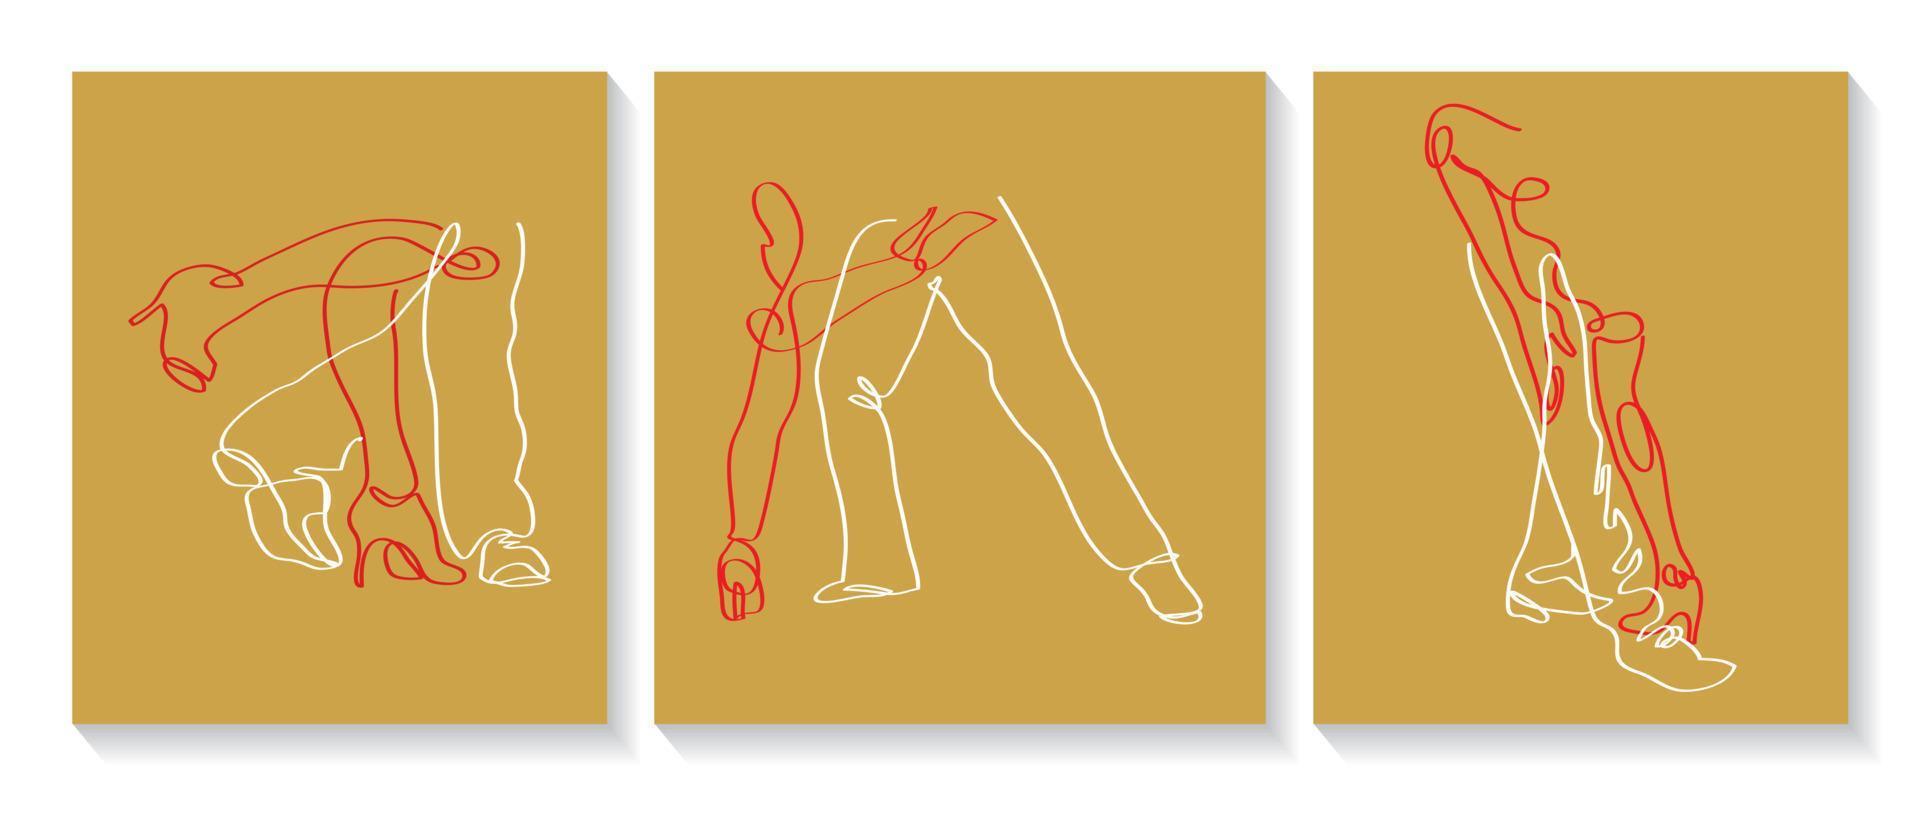 pose de danse de tango linéaire abstraite. vecteur lineart, minimalisme, amoureux de la danse. illustration vectorielle dessinés à la main.